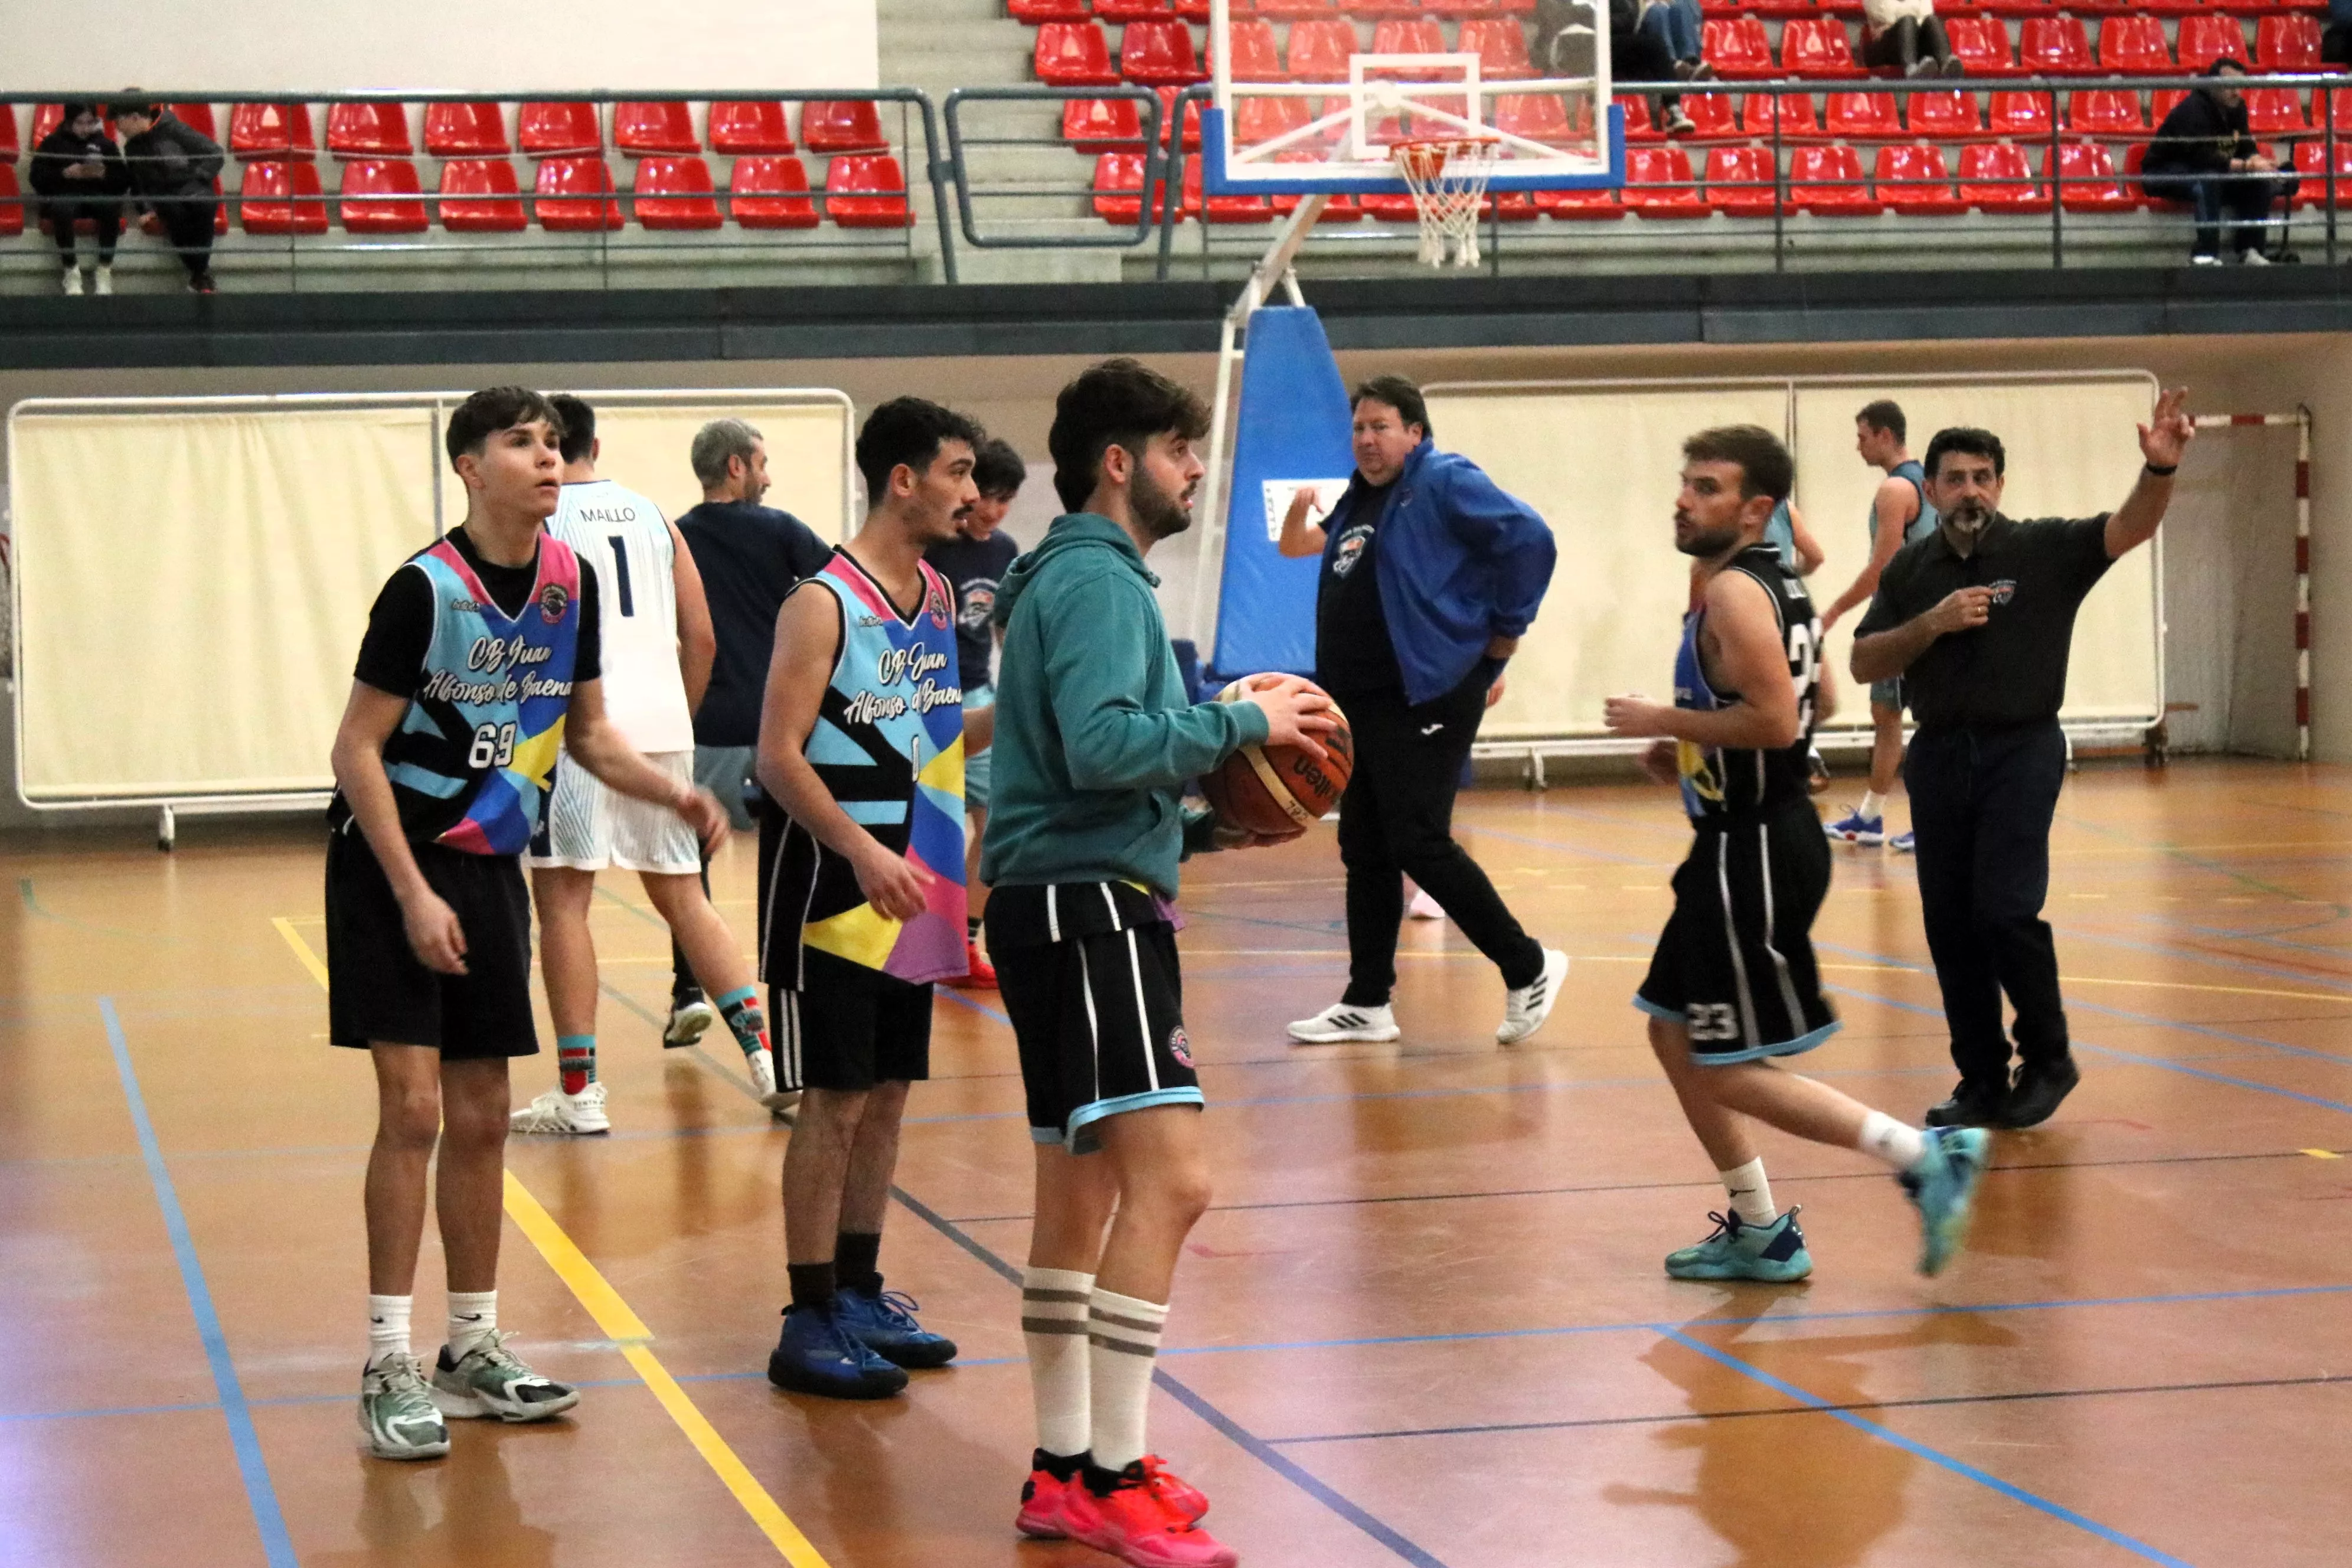 III Torneo de Baloncesto "Zapatillas Solidarias"